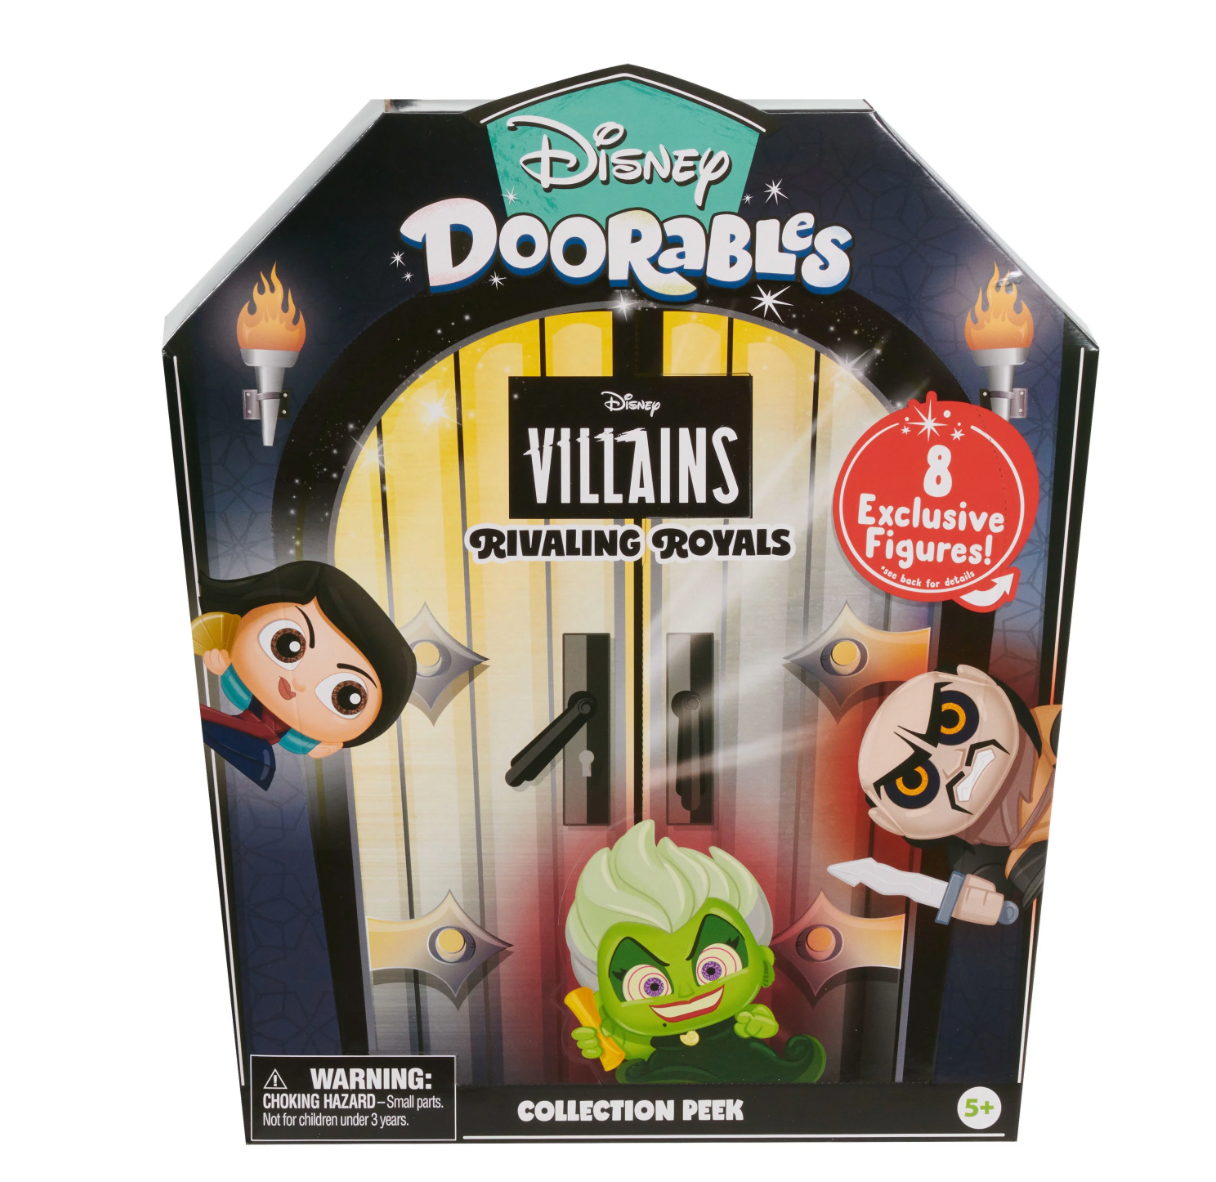  Disney Doorables NEW Wish Collector Peek, Collectible